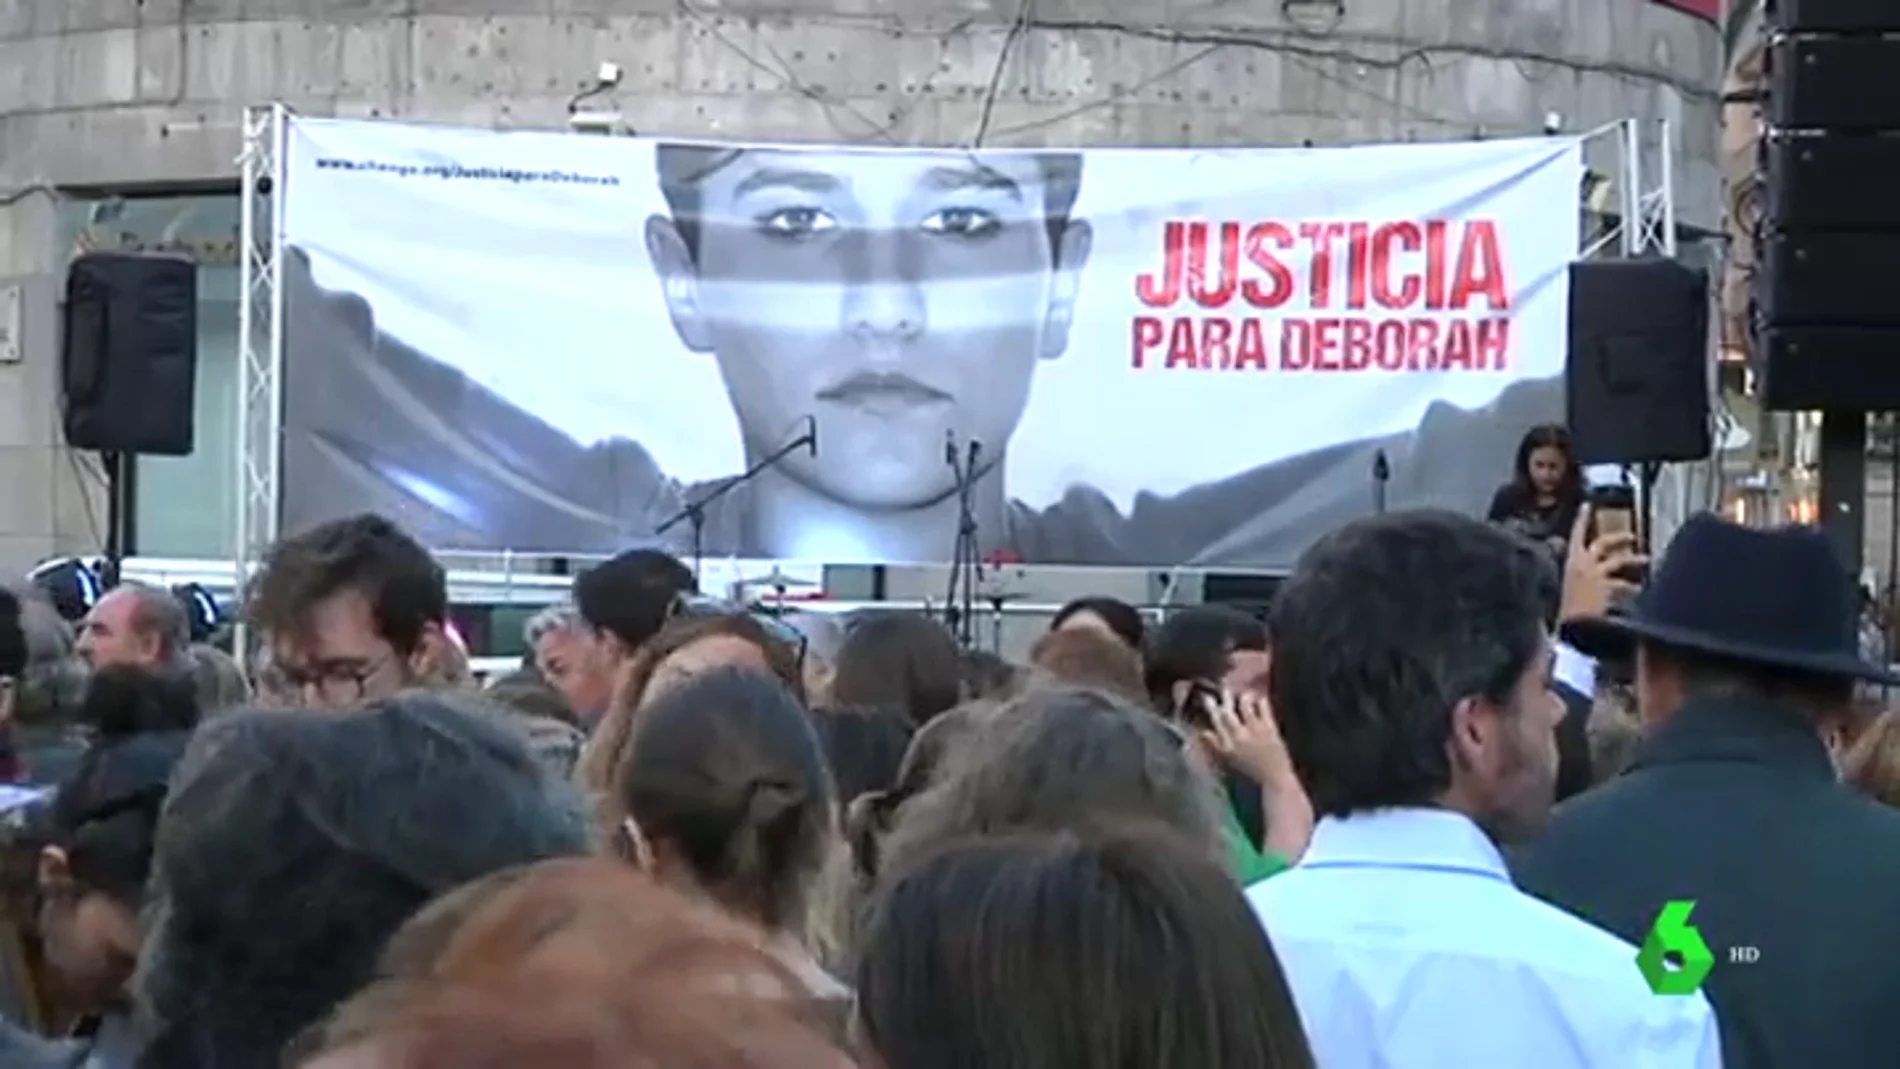 Vigo pide justicia para Débora Fernández 17 años después de su asesinato